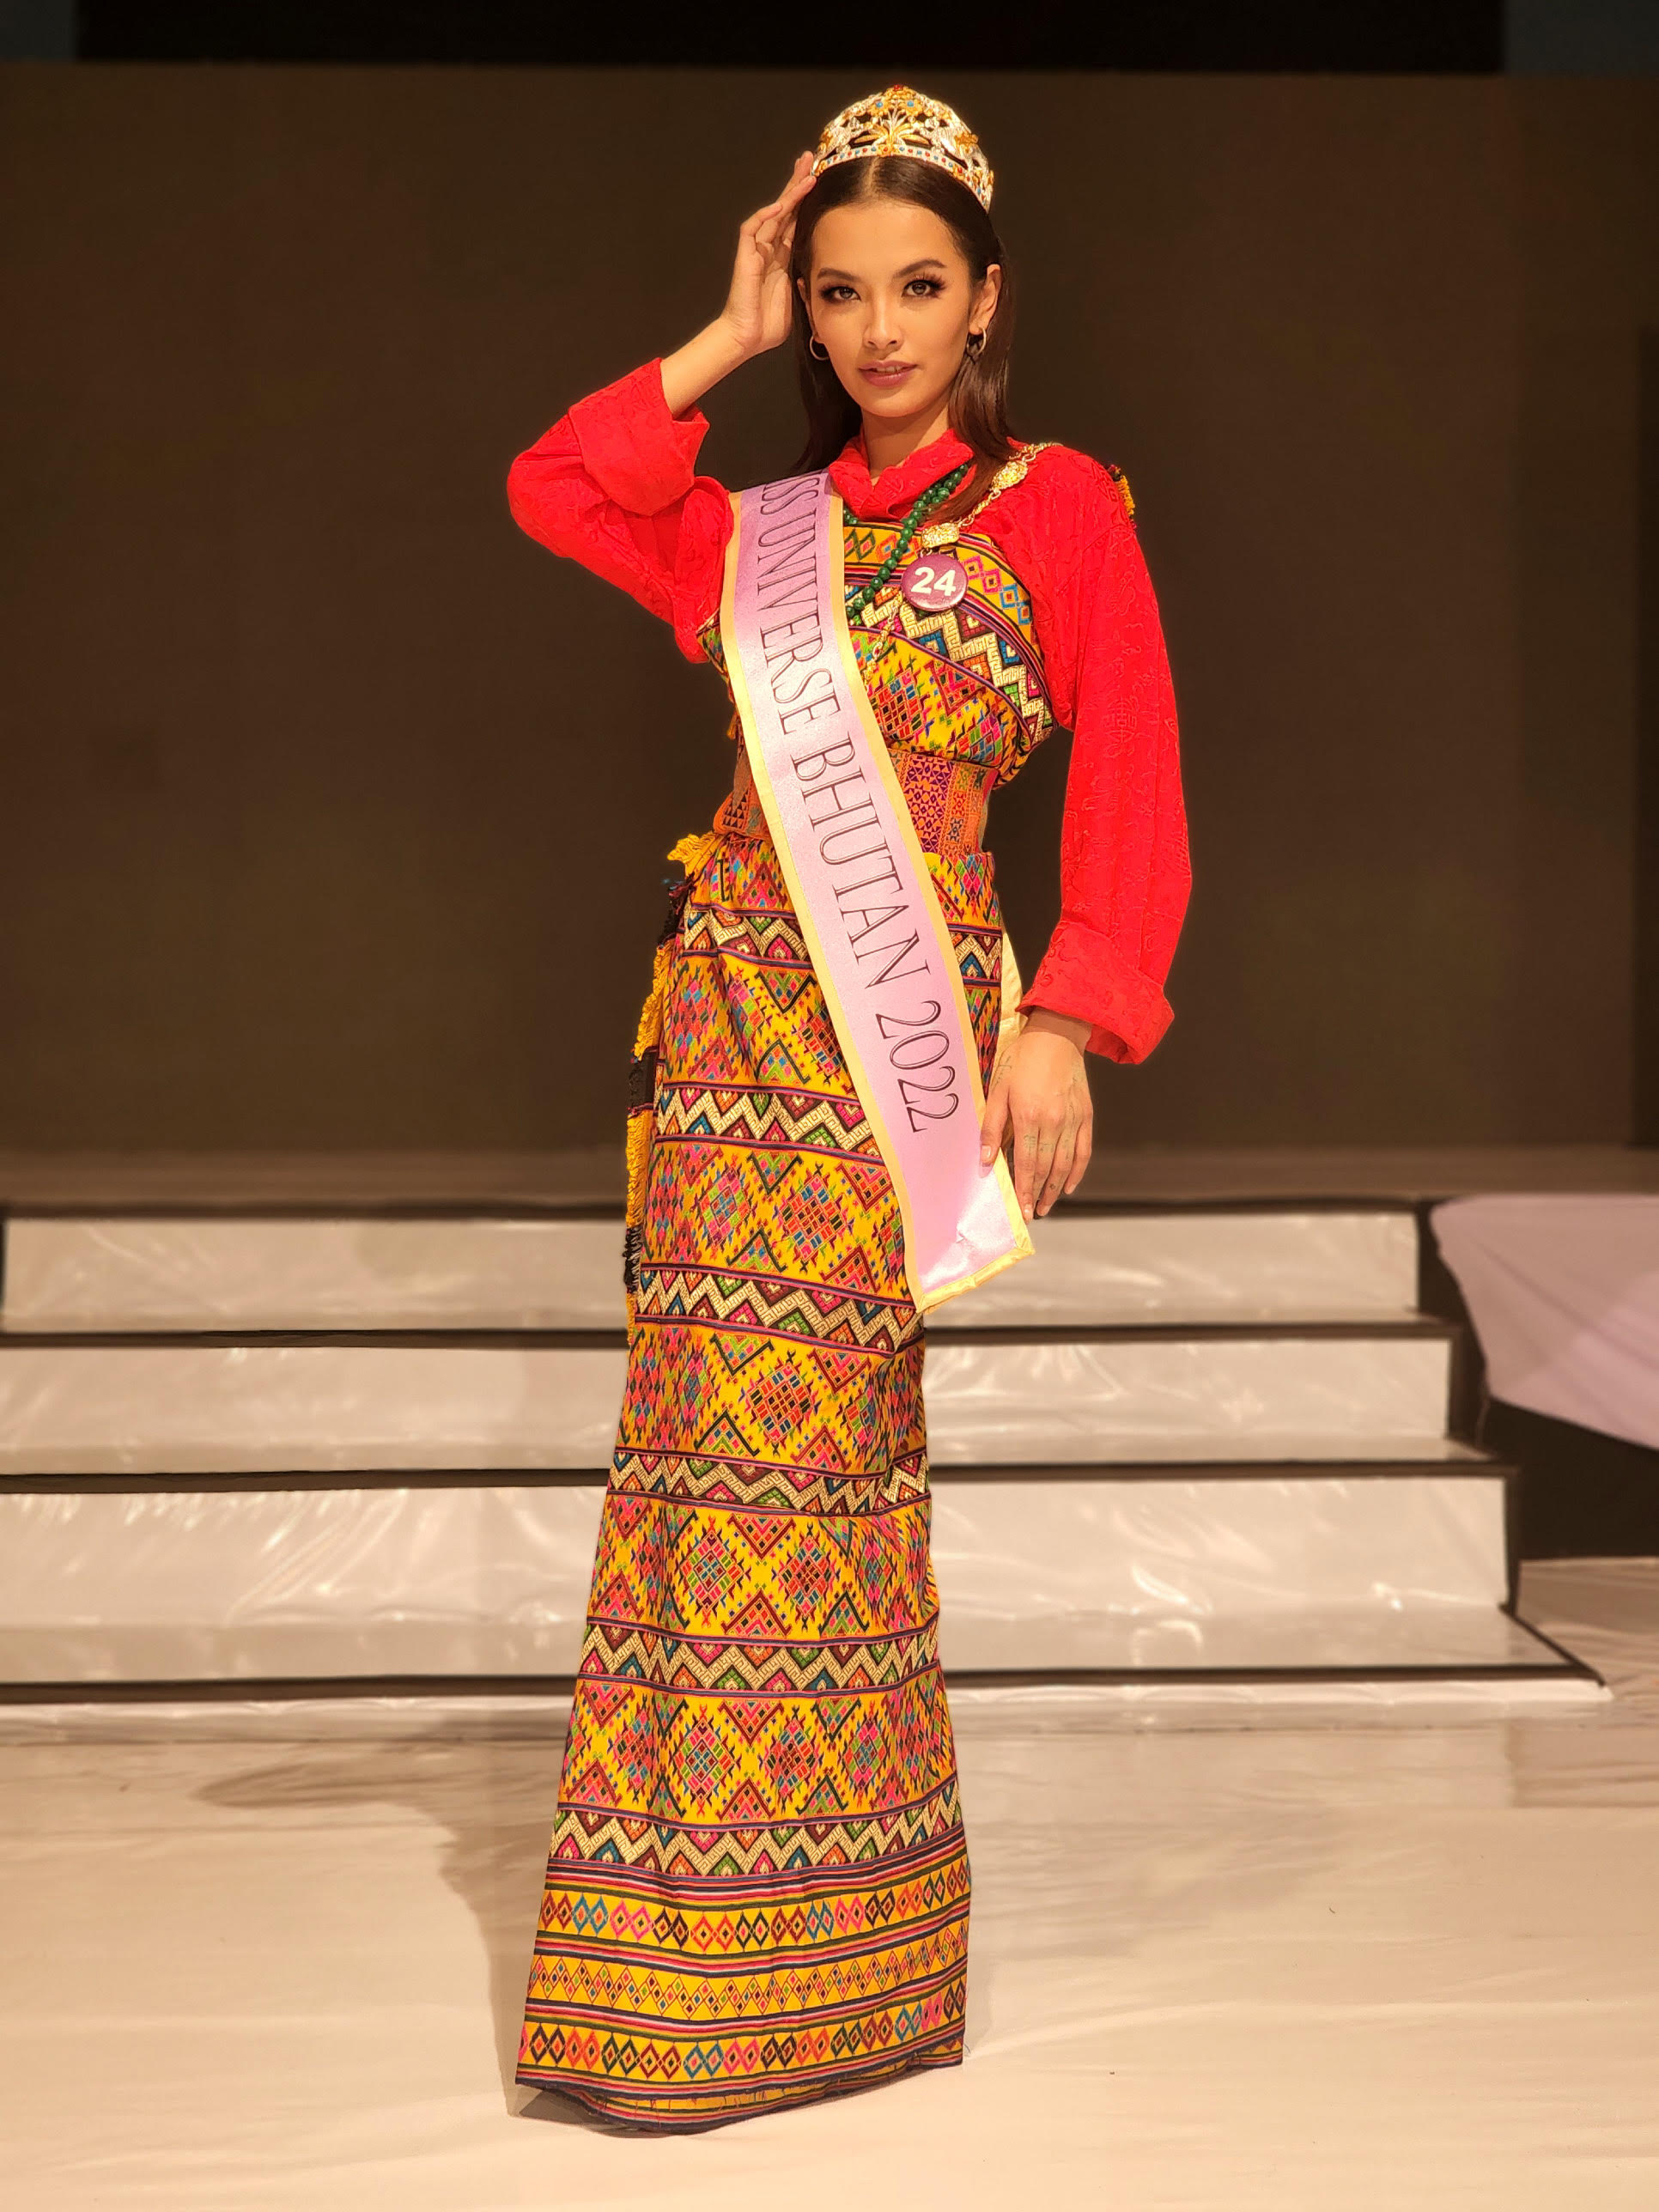 Miss Bhutan Tashi Choden